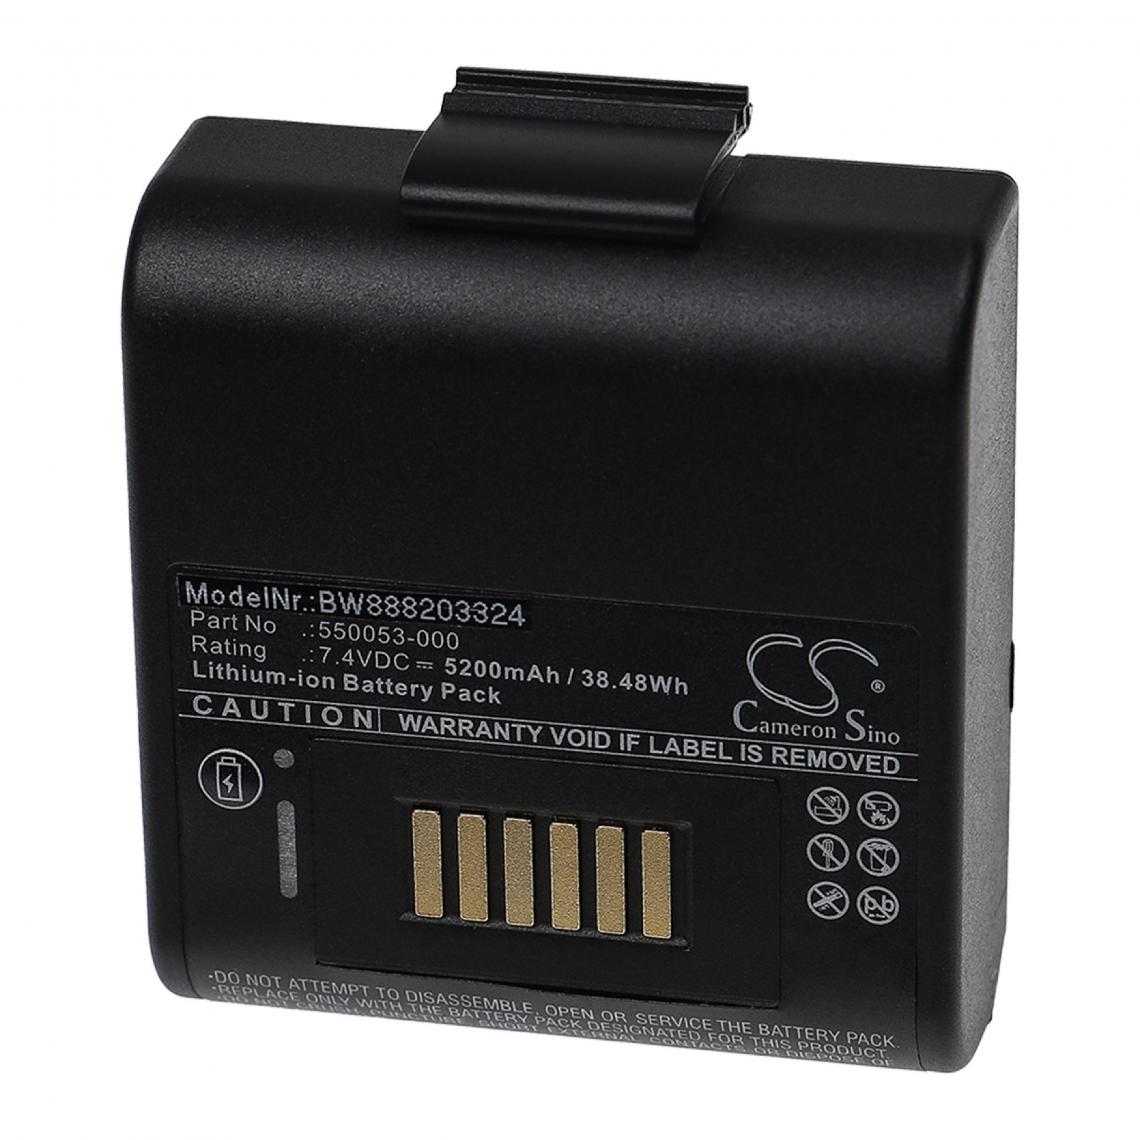 Vhbw - vhbw Batterie remplacement pour Oneil 550053-000 pour imprimante, scanner, imprimante d'étiquettes (5200mAh, 7,4V, Li-ion) - Imprimante Jet d'encre